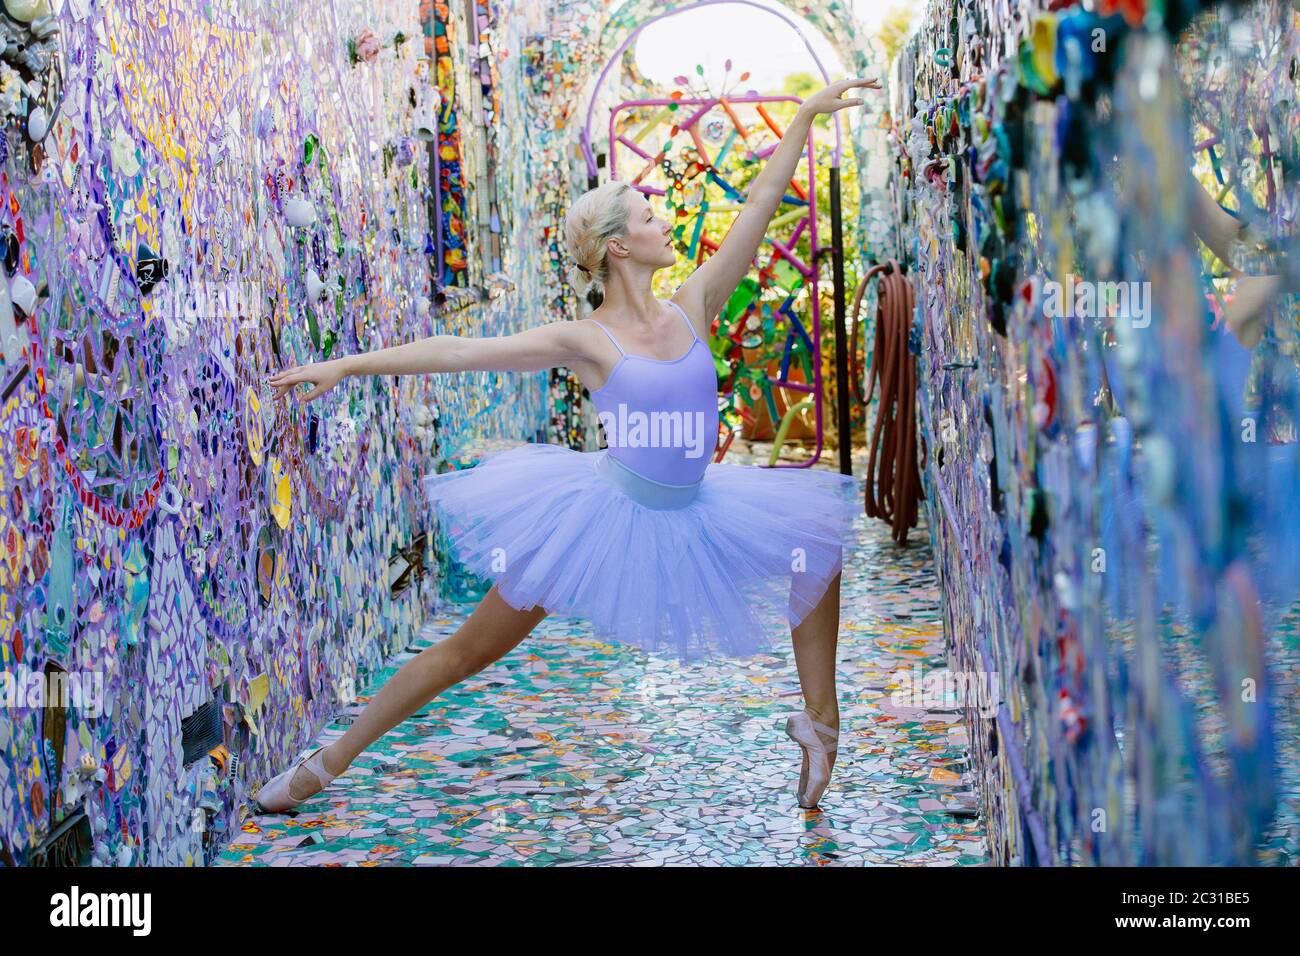 Ballet dancer, Mosaic Tile House, Venice, California, USA Stock Photo